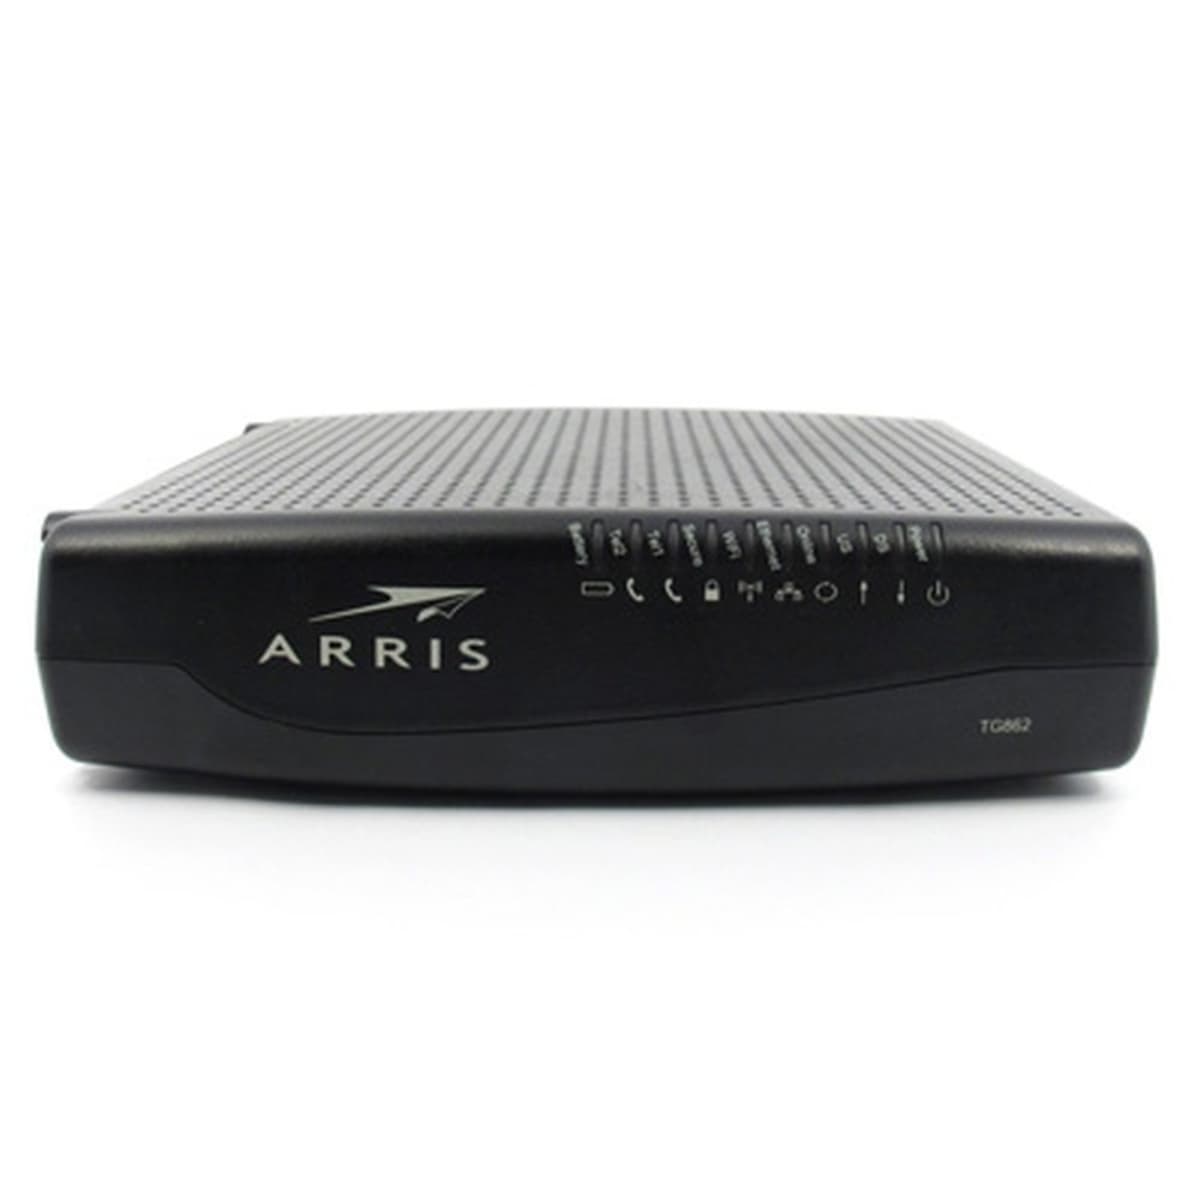 ARRIS TG862G WiFi Telephone EMTA Modem Comcast/Xfinity, Mediacom, RCN, + more! 